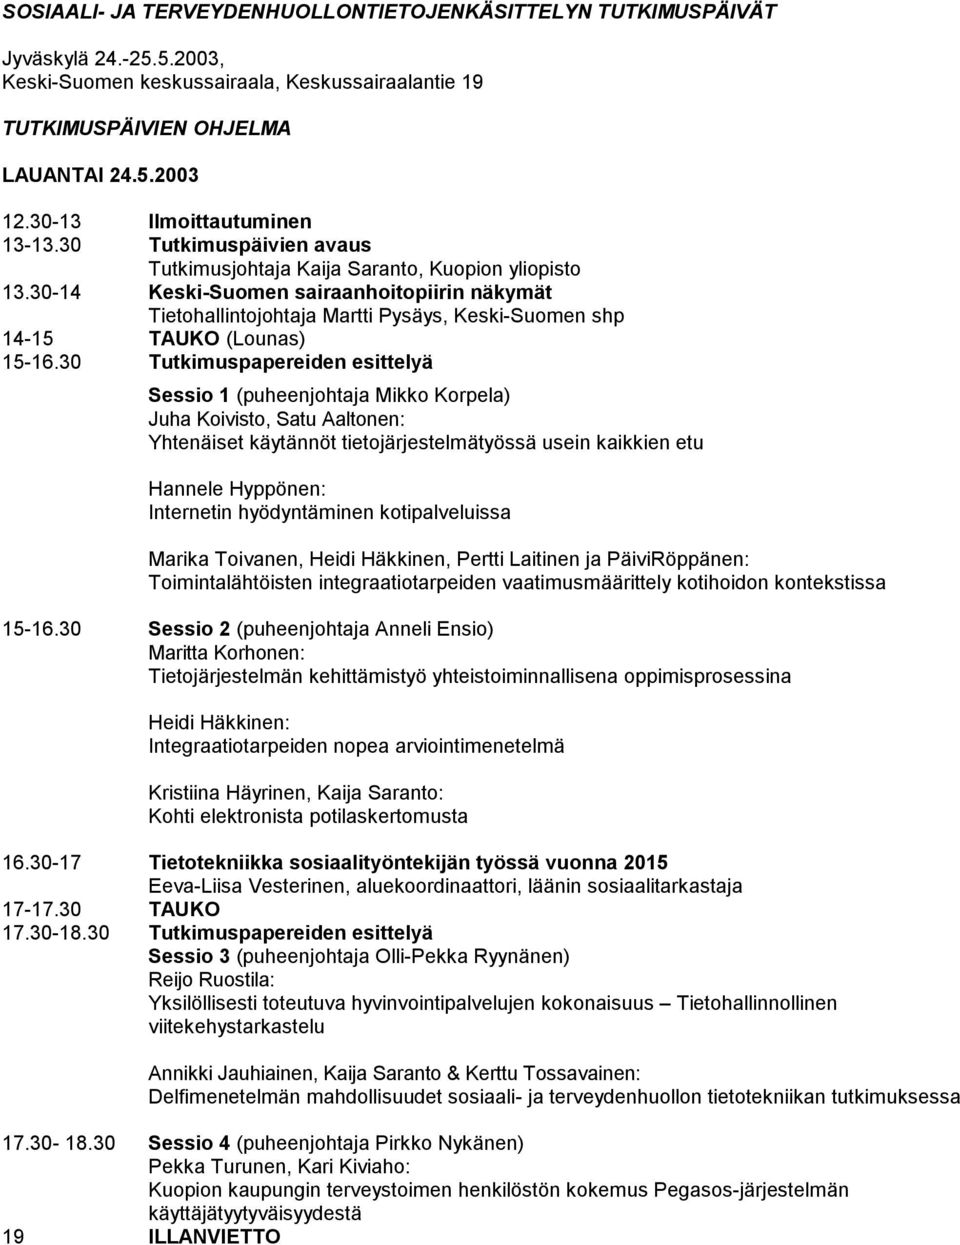 30-14 Keski-Suomen sairaanhoitopiirin näkymät Tietohallintojohtaja Martti Pysäys, Keski-Suomen shp 14-15 TAUKO (Lounas) 15-16.